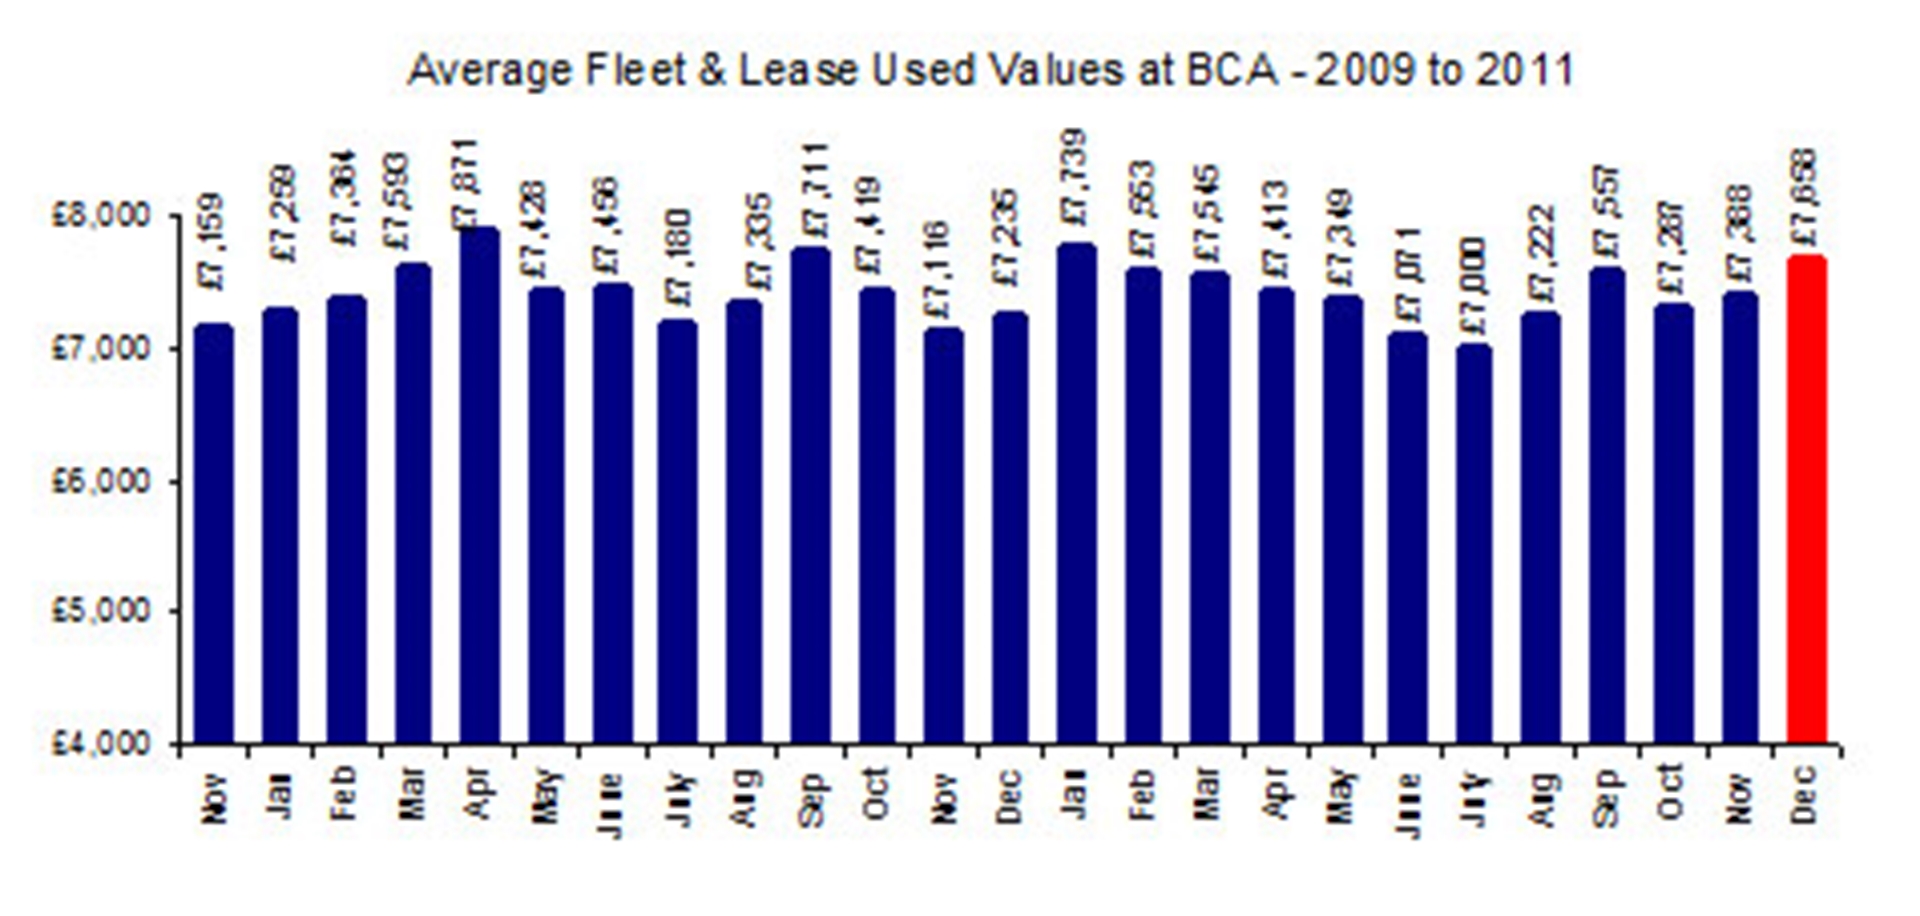 Fleet values